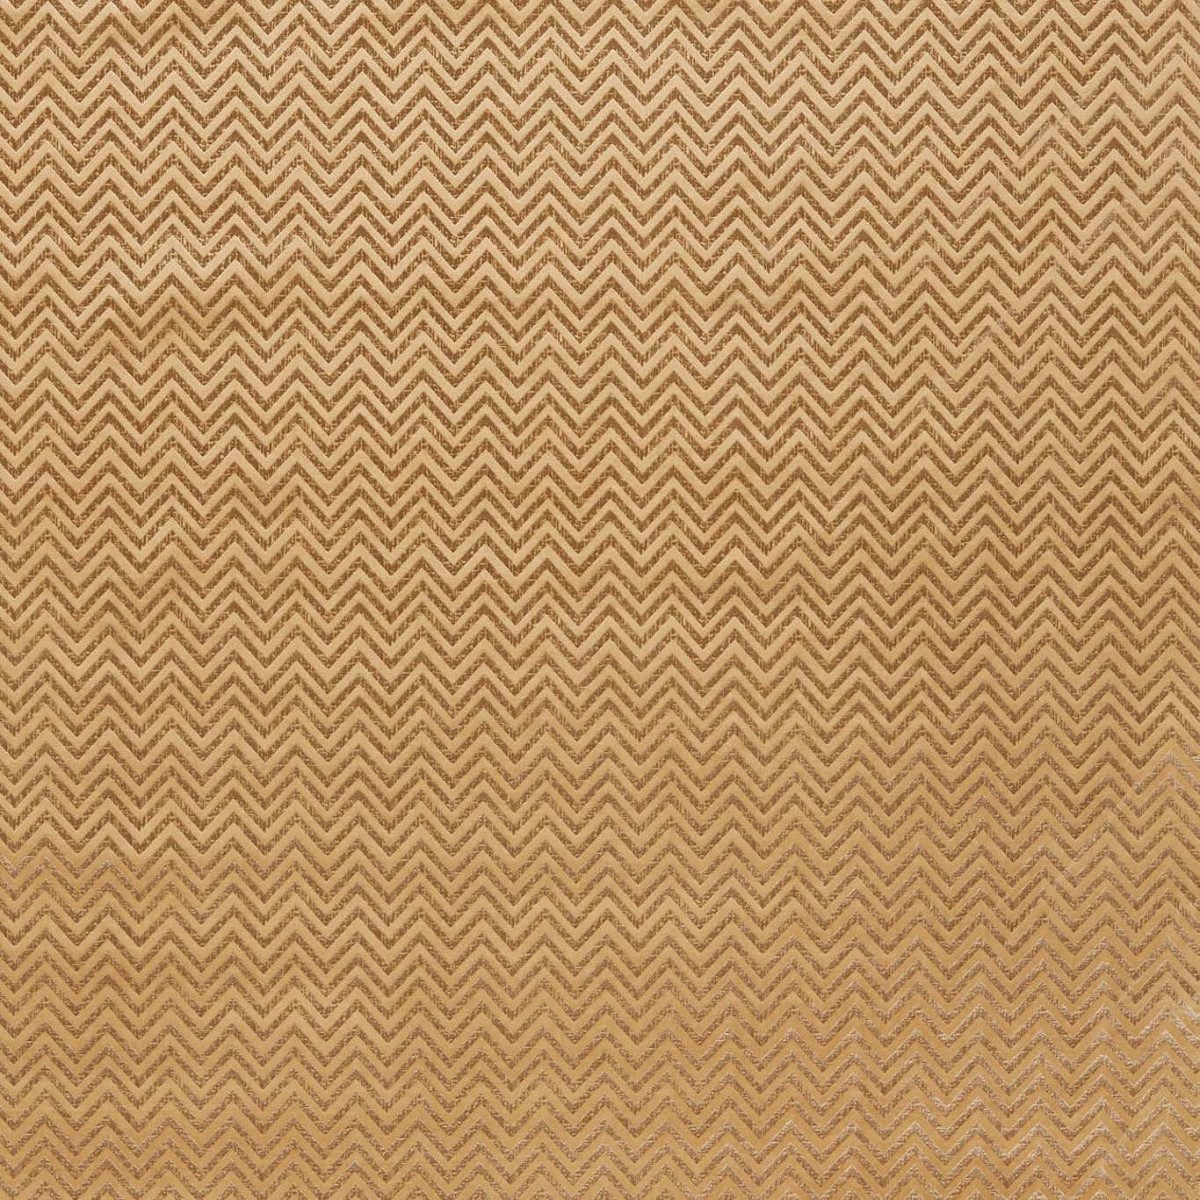 Nexus Gold Fabric by Studio G